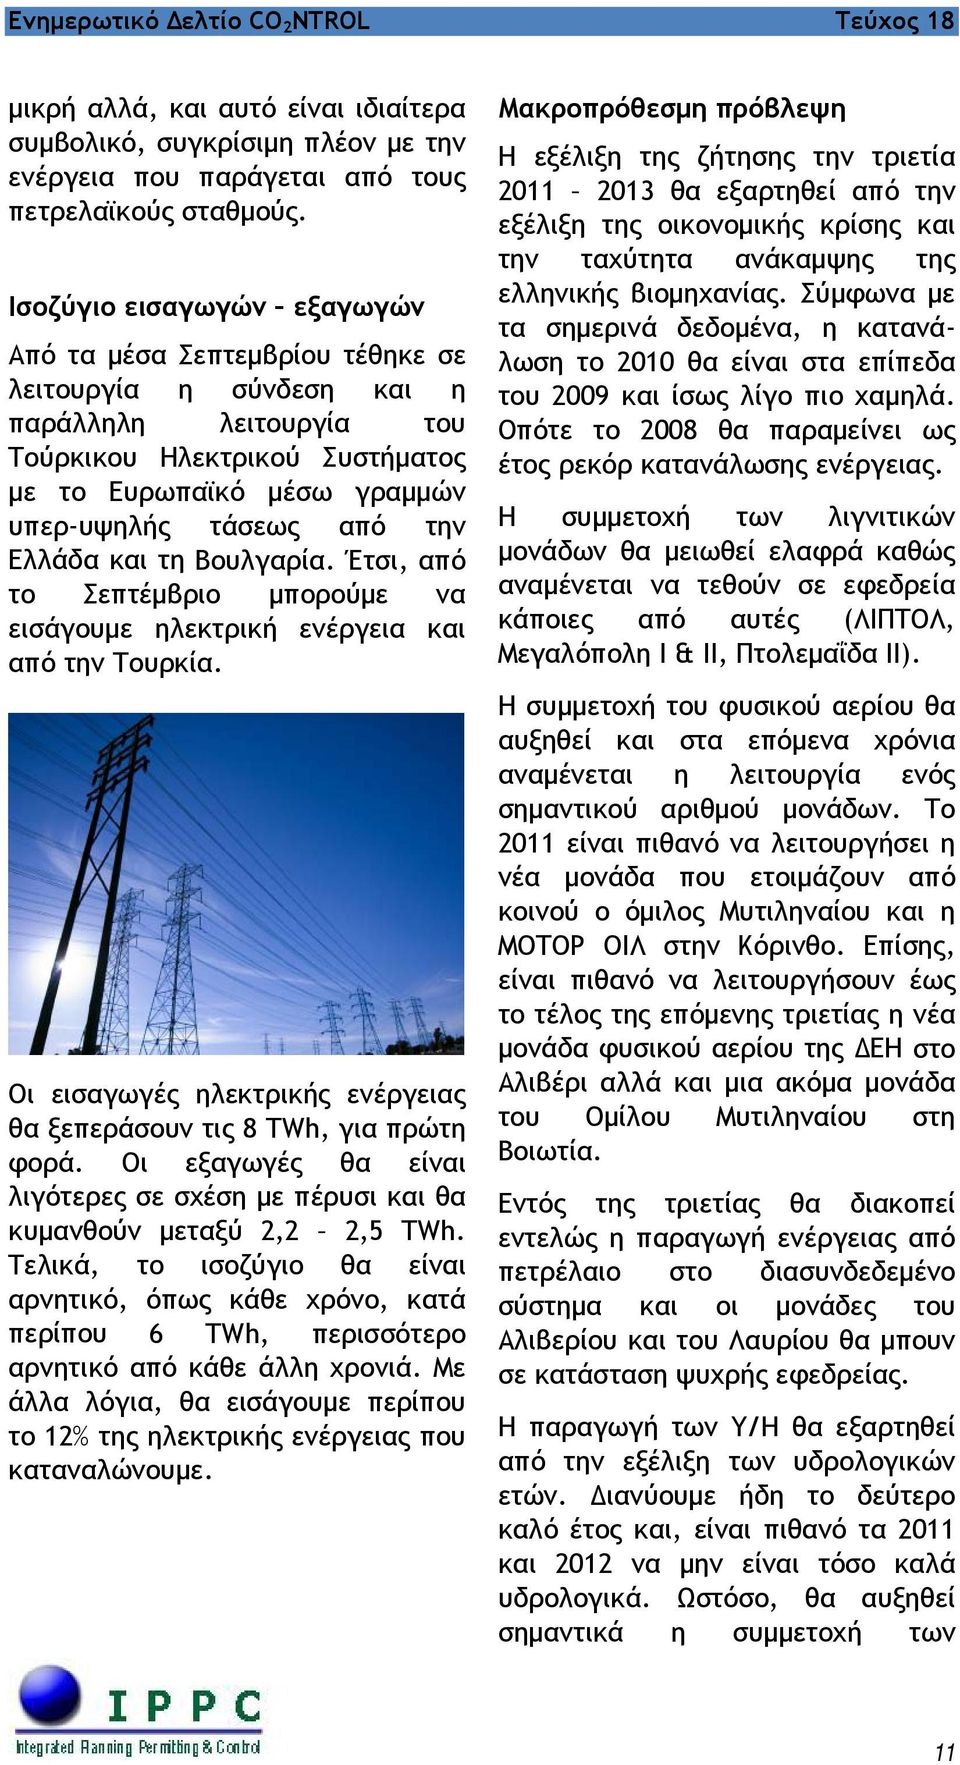 την Ελλάδα και τη Βουλγαρία. Έτσι, από το Σεπτέμβριο μπορούμε να εισάγουμε ηλεκτρική ενέργεια και από την Τουρκία. Οι εισαγωγές ηλεκτρικής ενέργειας θα ξεπεράσουν τις 8 TWh, για πρώτη φορά.